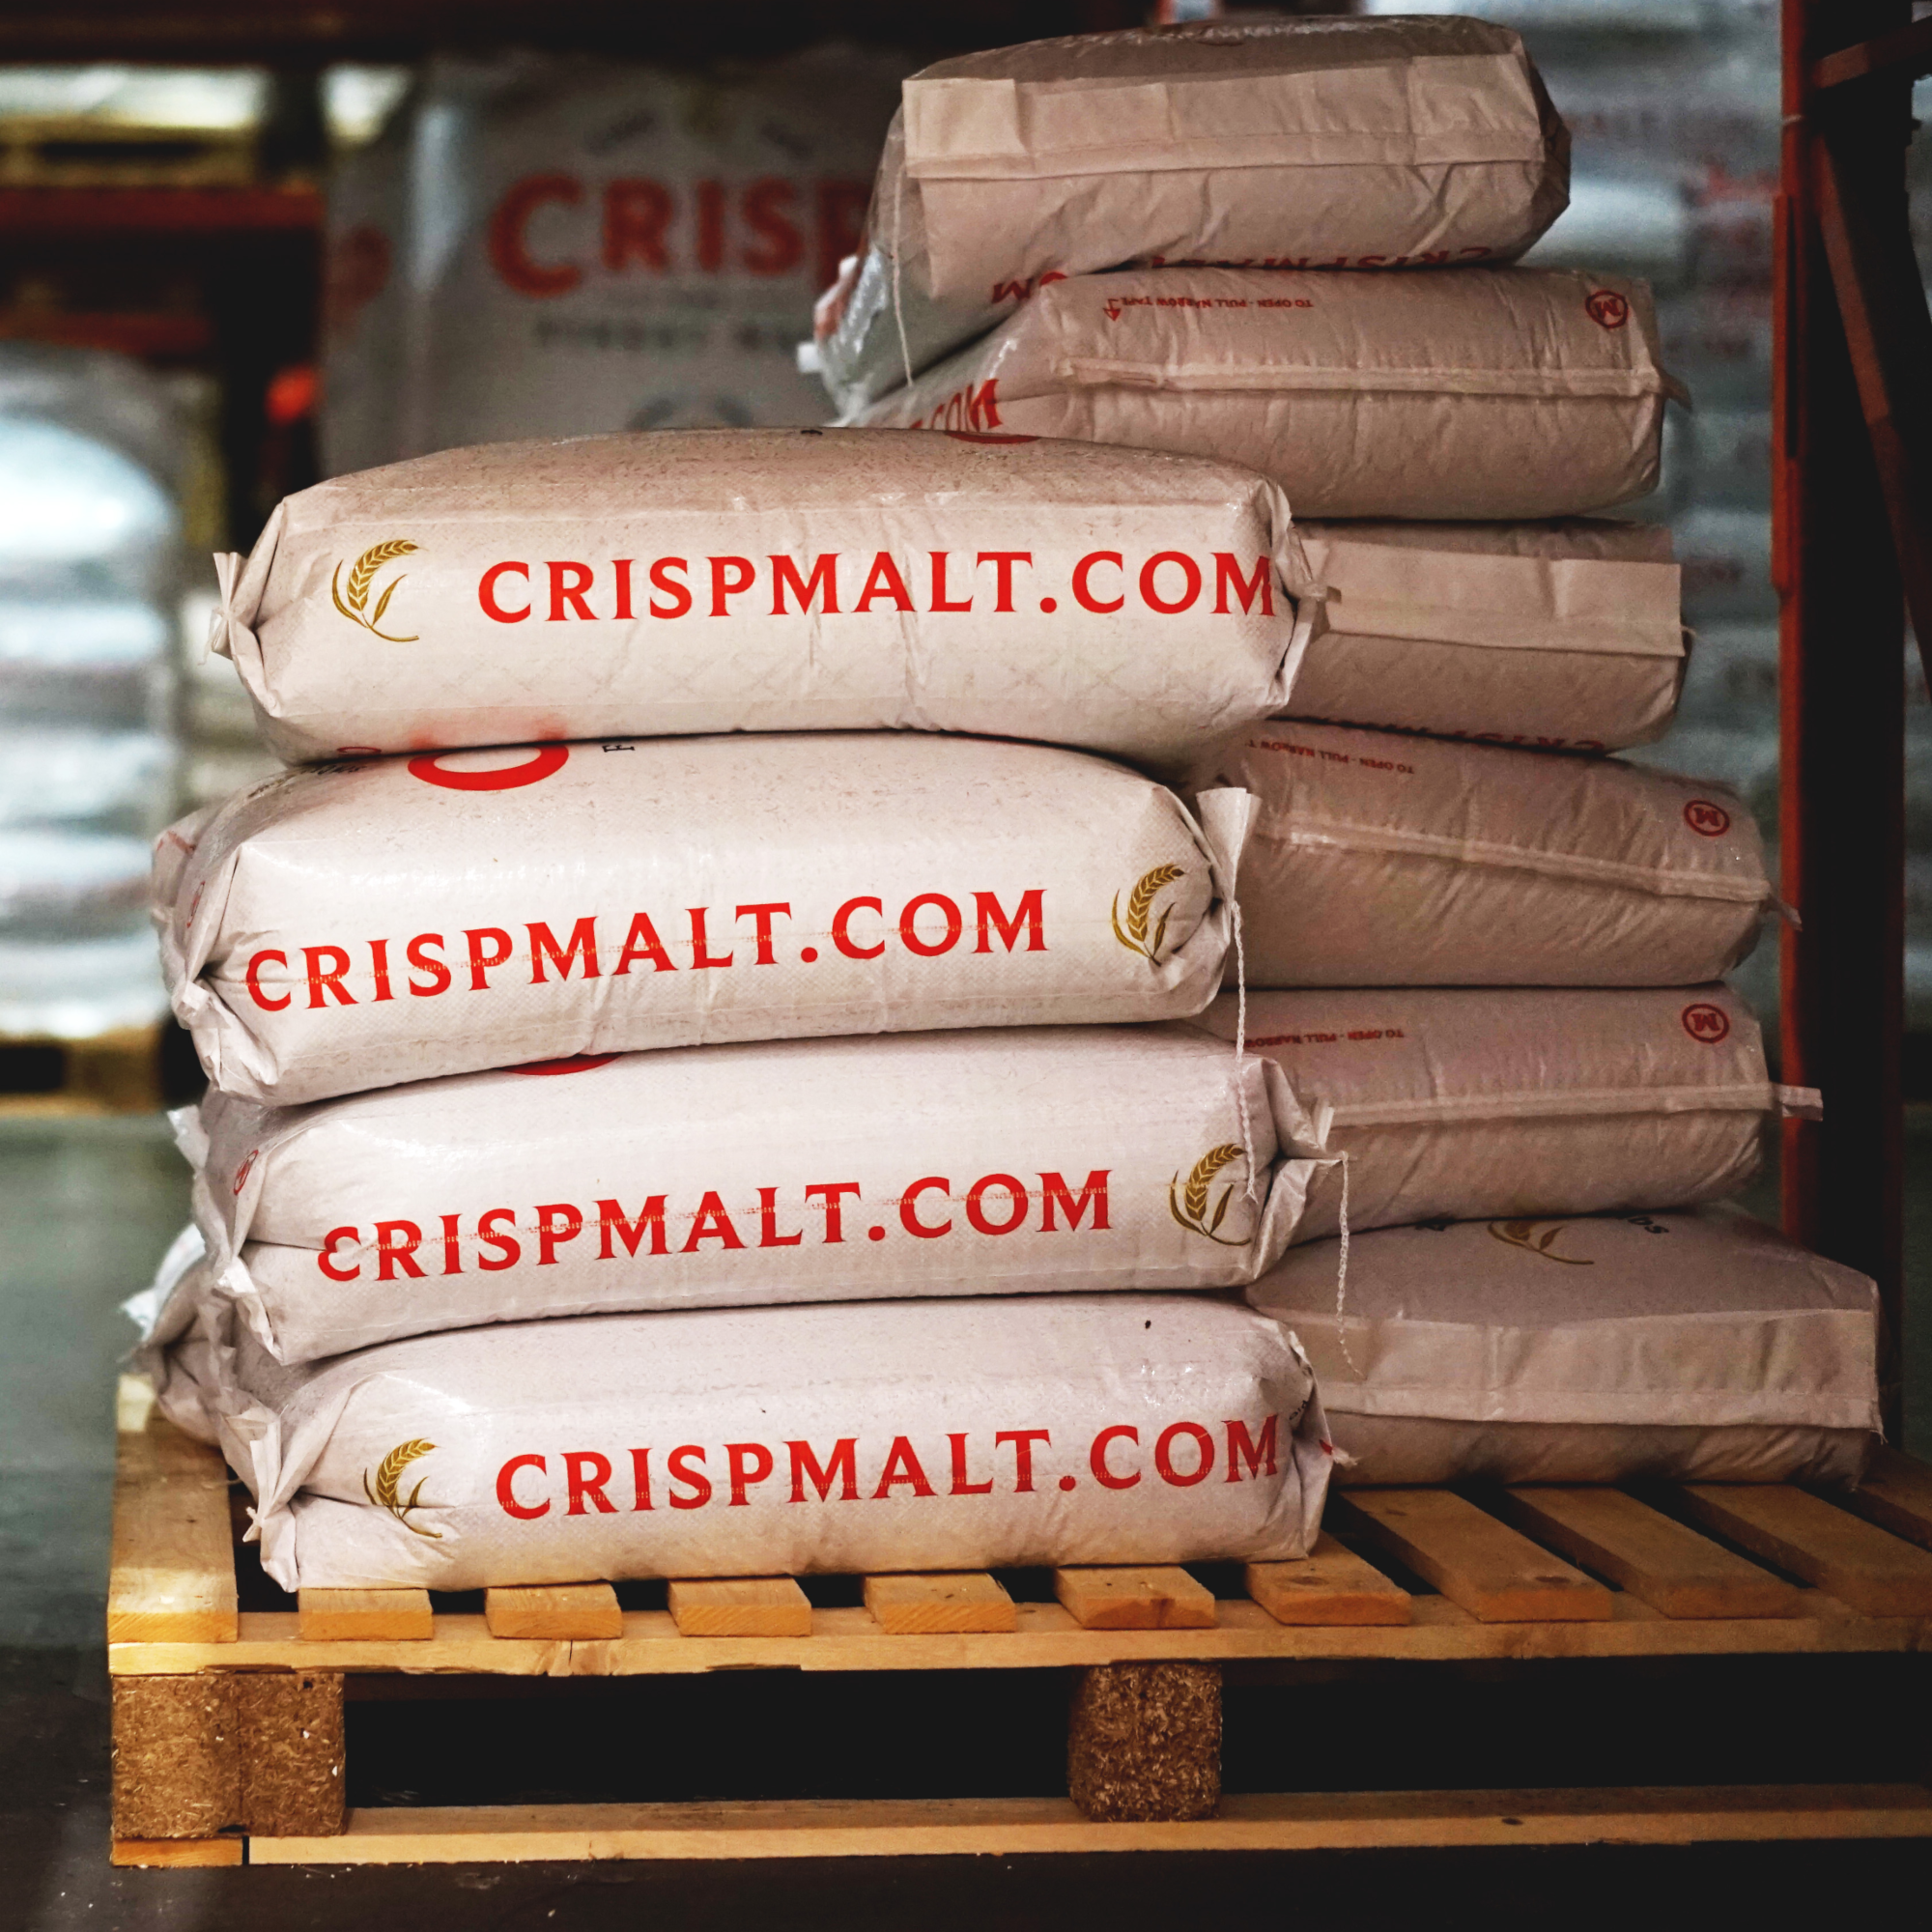 Crisp Malt 25kg Sacks in the Warehouse | Malt packaging